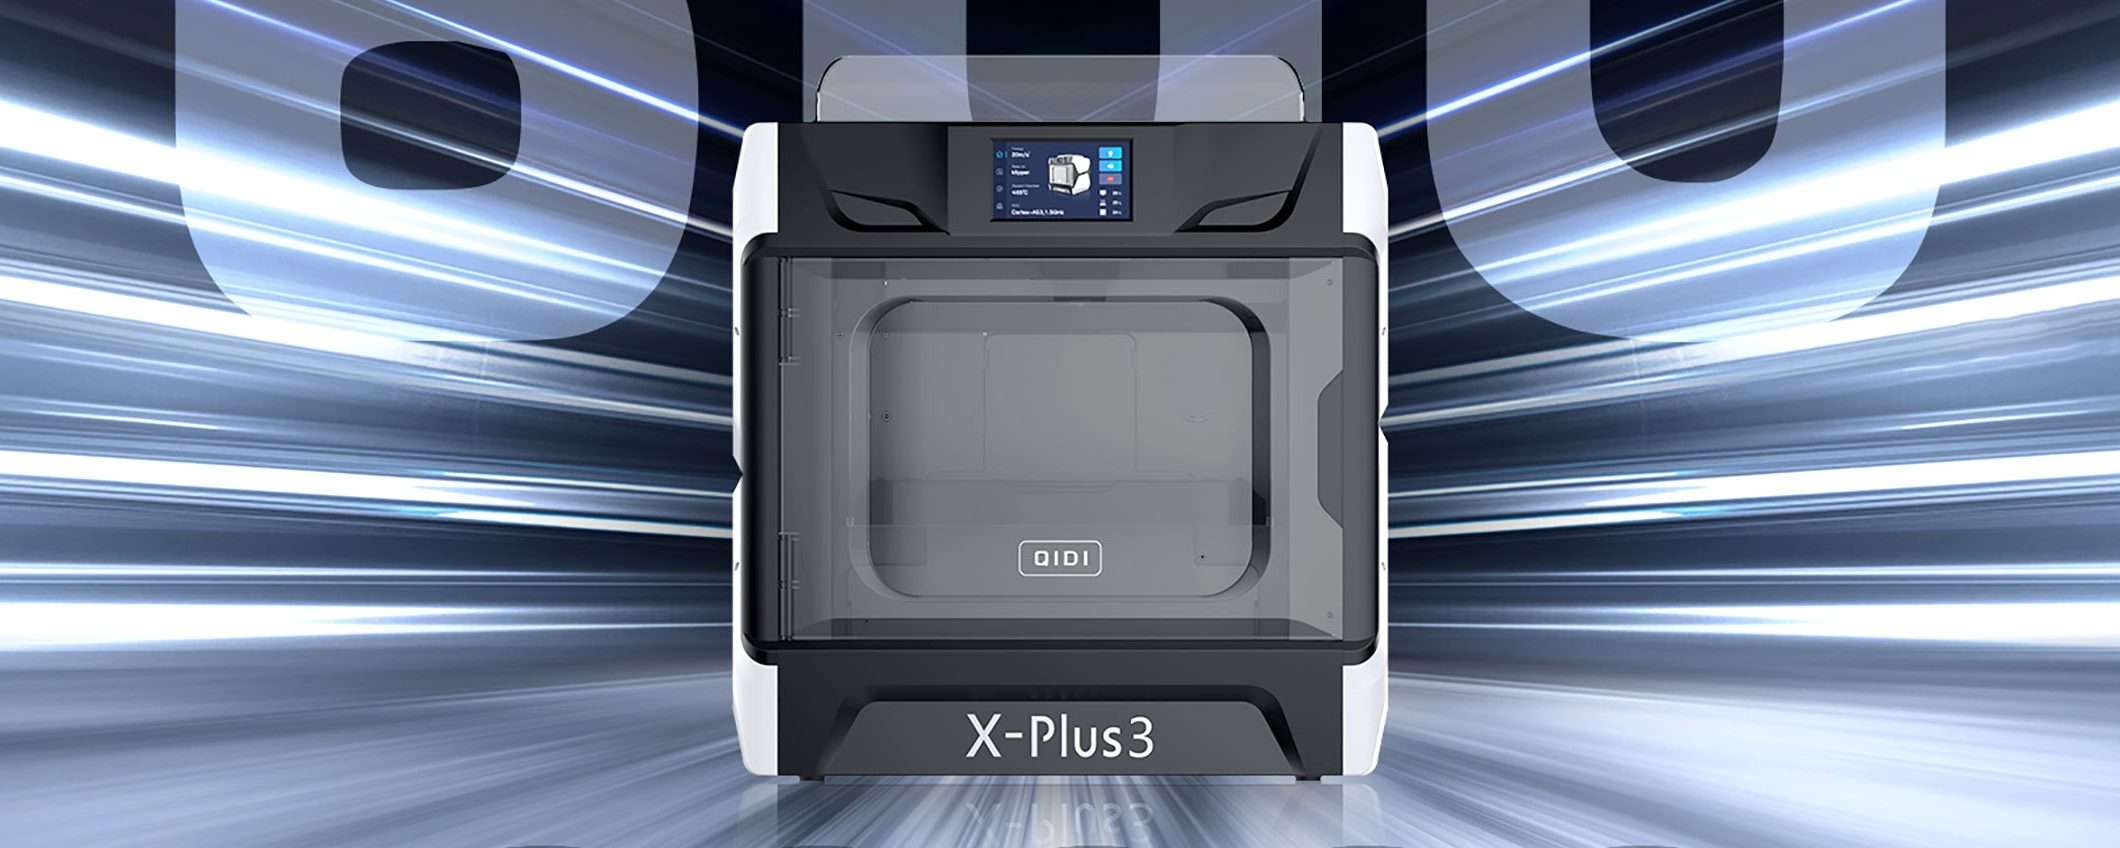 Stampanti 3D: QIDI X-Plus 3 e X-Max 3, grandi volumi e velocità